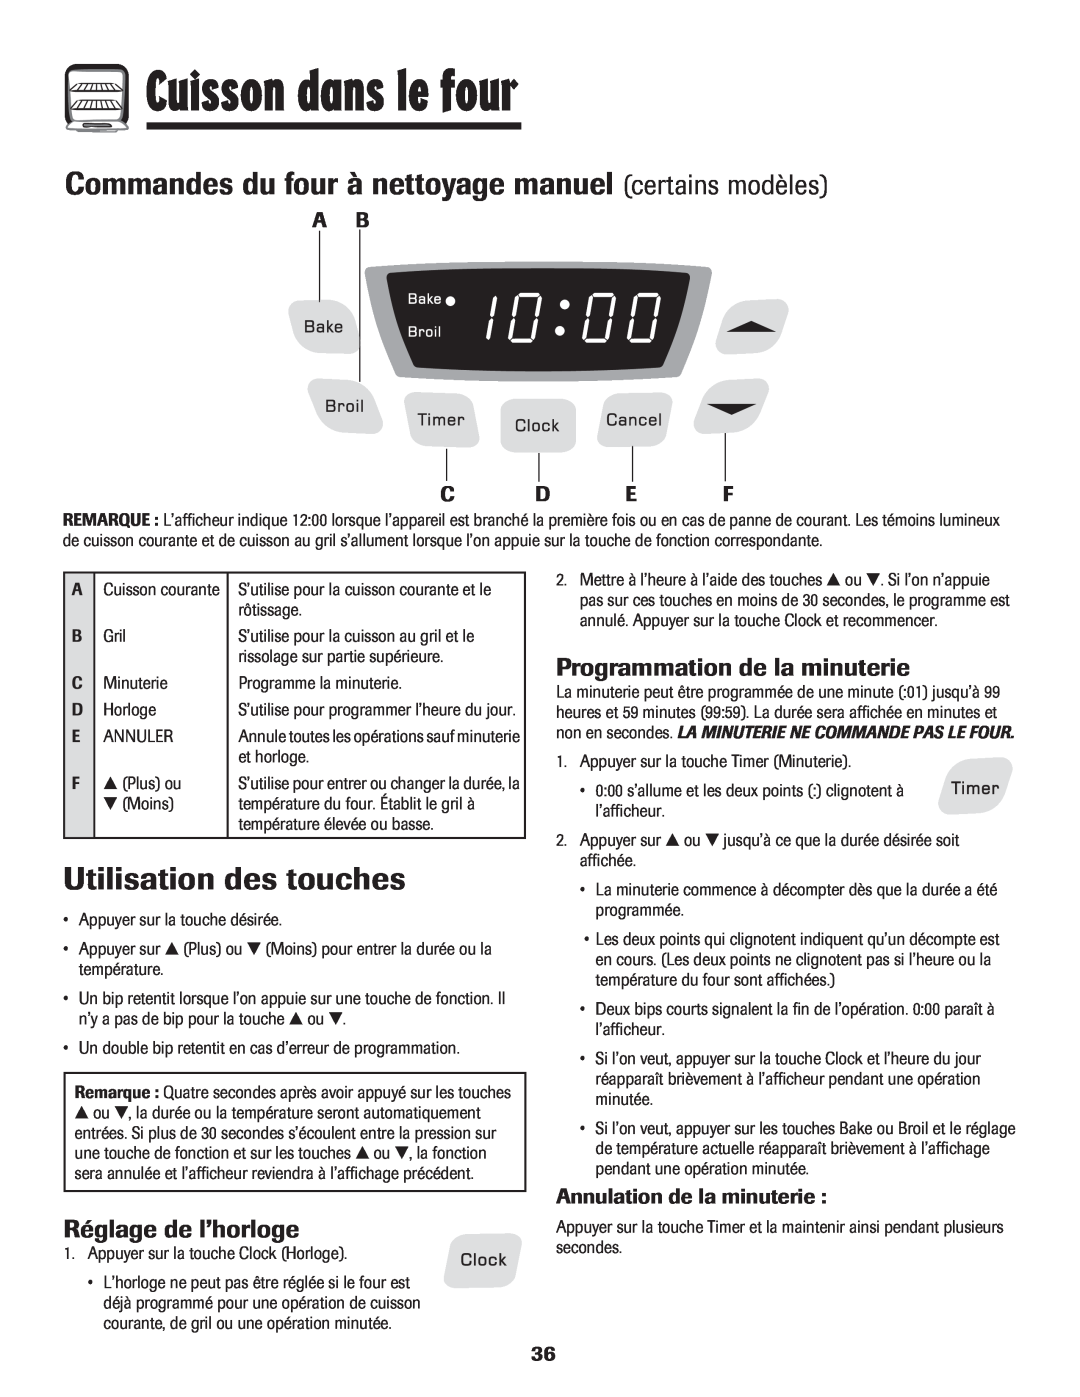 Amana 8113P515-60 manual Cuisson dans le four, Utilisation des touches, Programmation de la minuterie, Réglage de l’horloge 